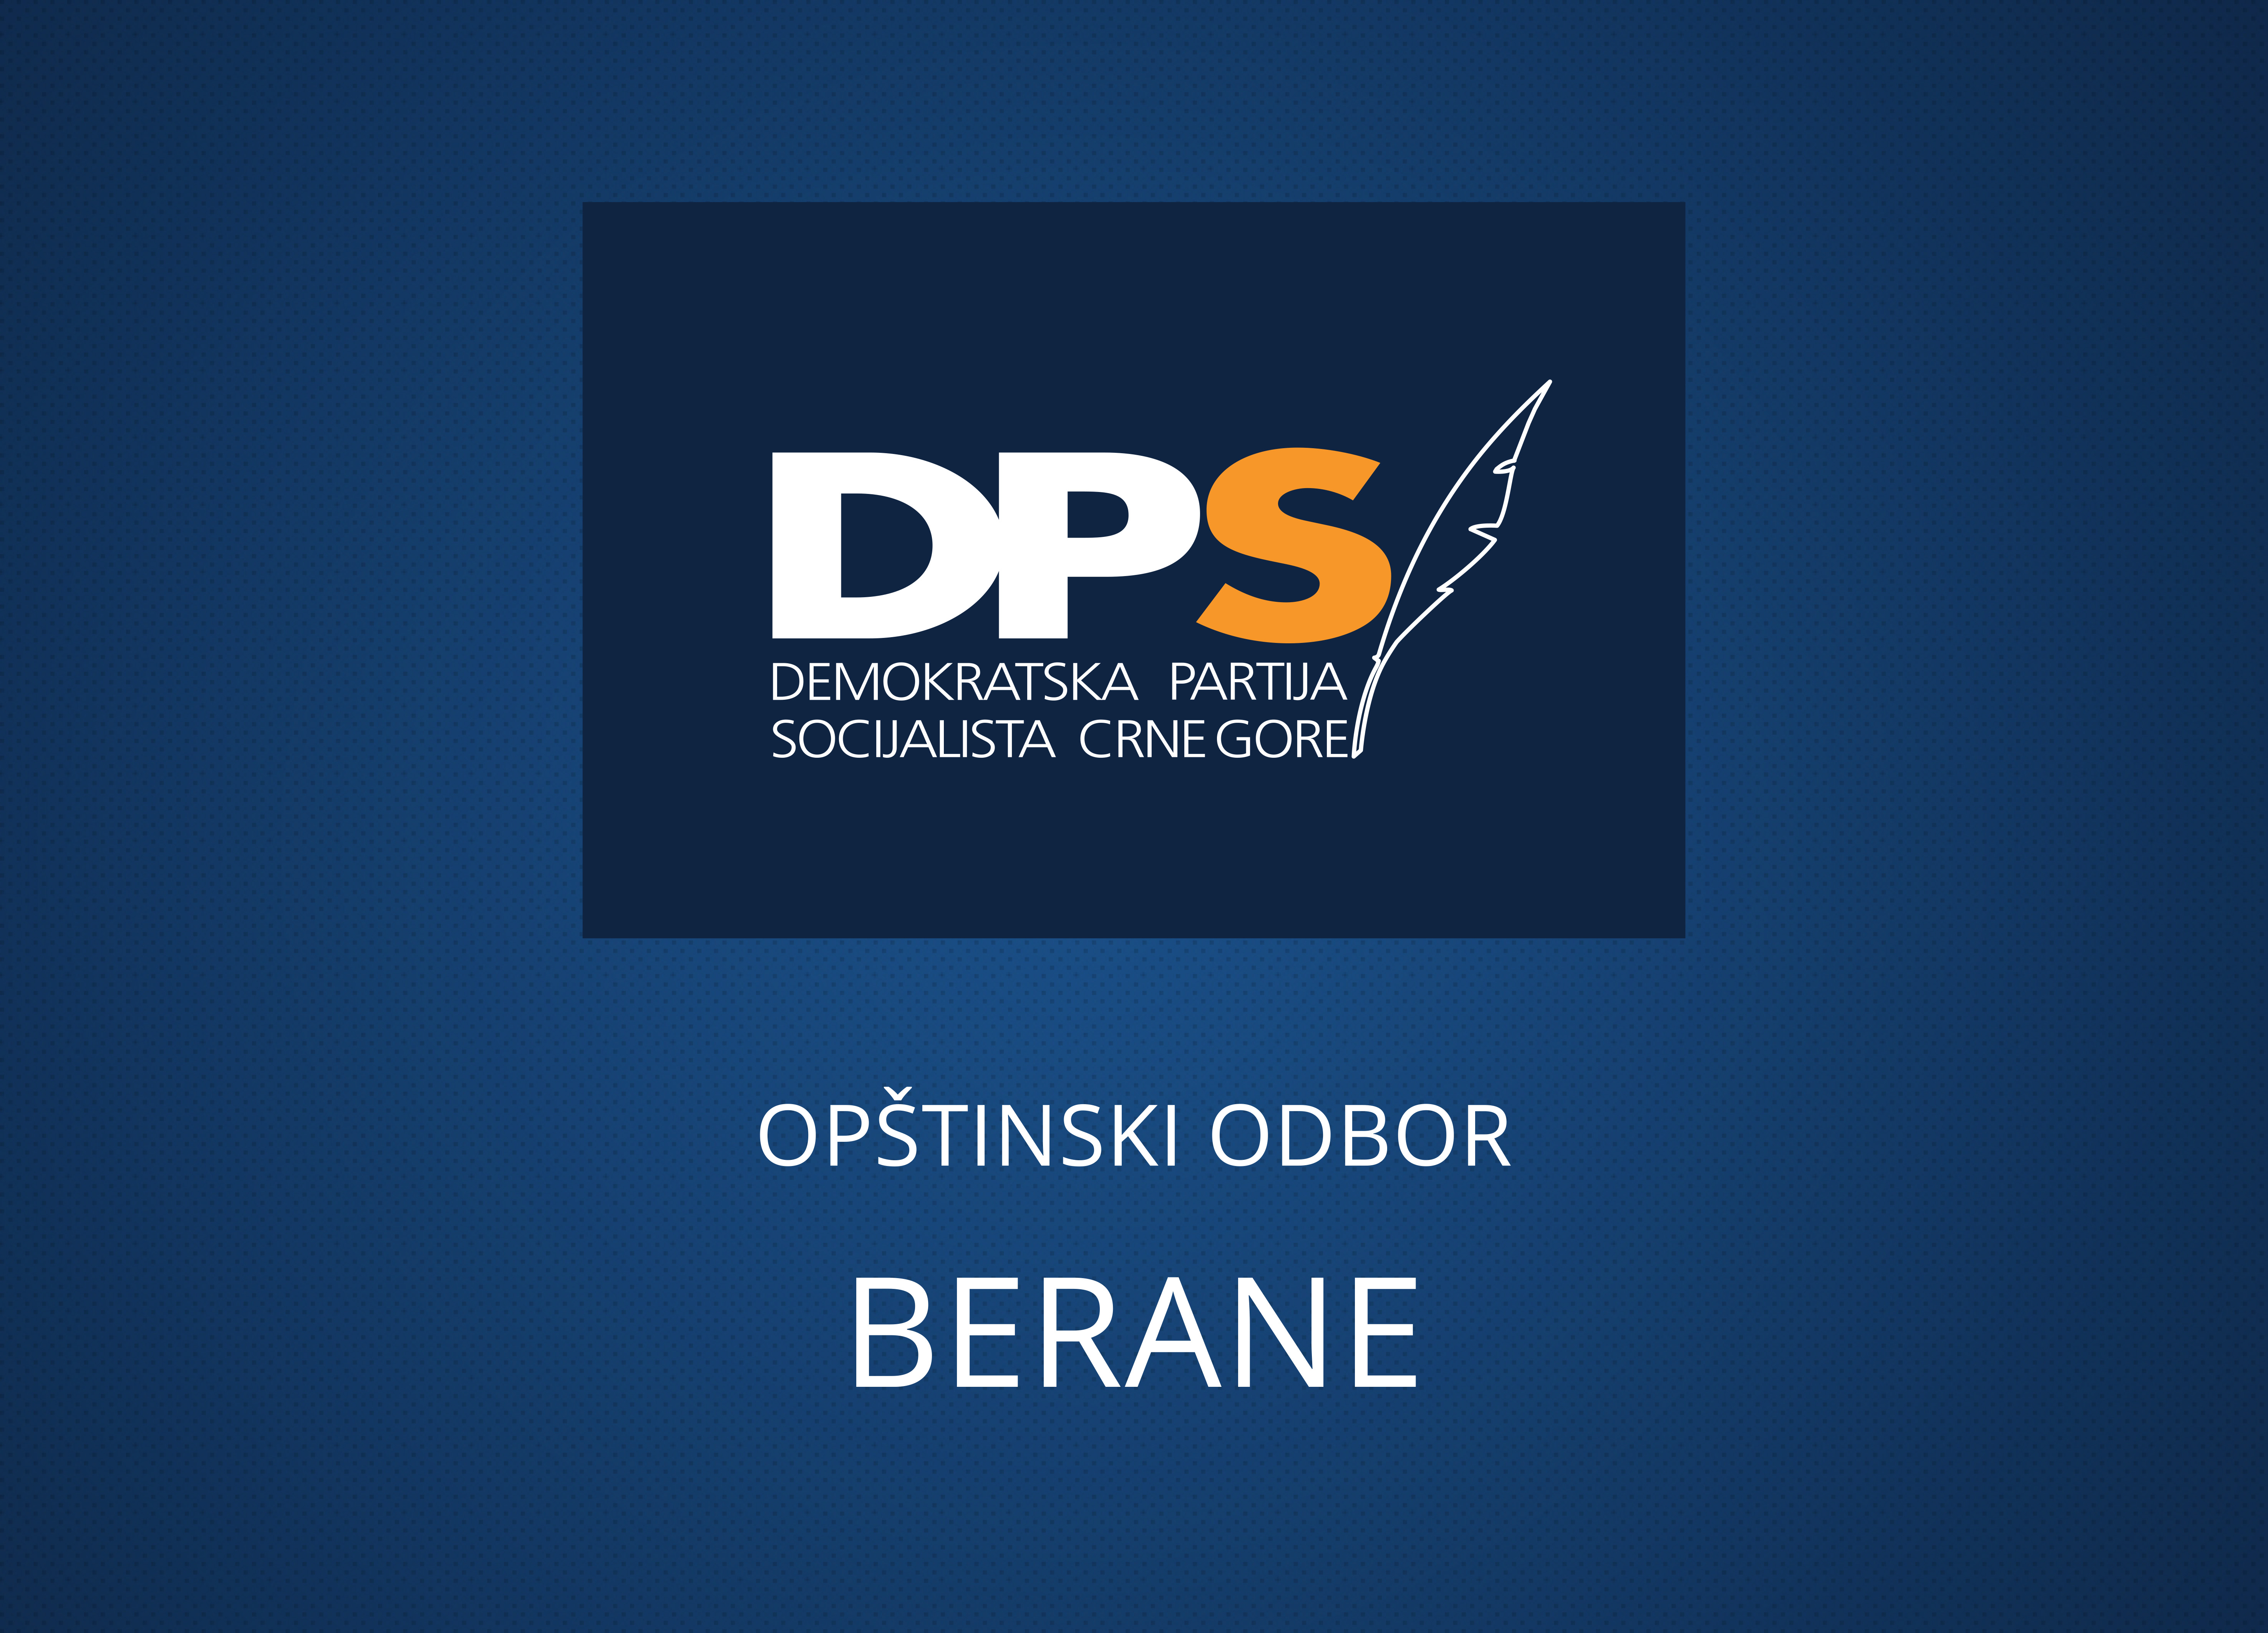 DPS Berane: Četničku ideologiju porazili naši đedovi, DPS garant antifašizma